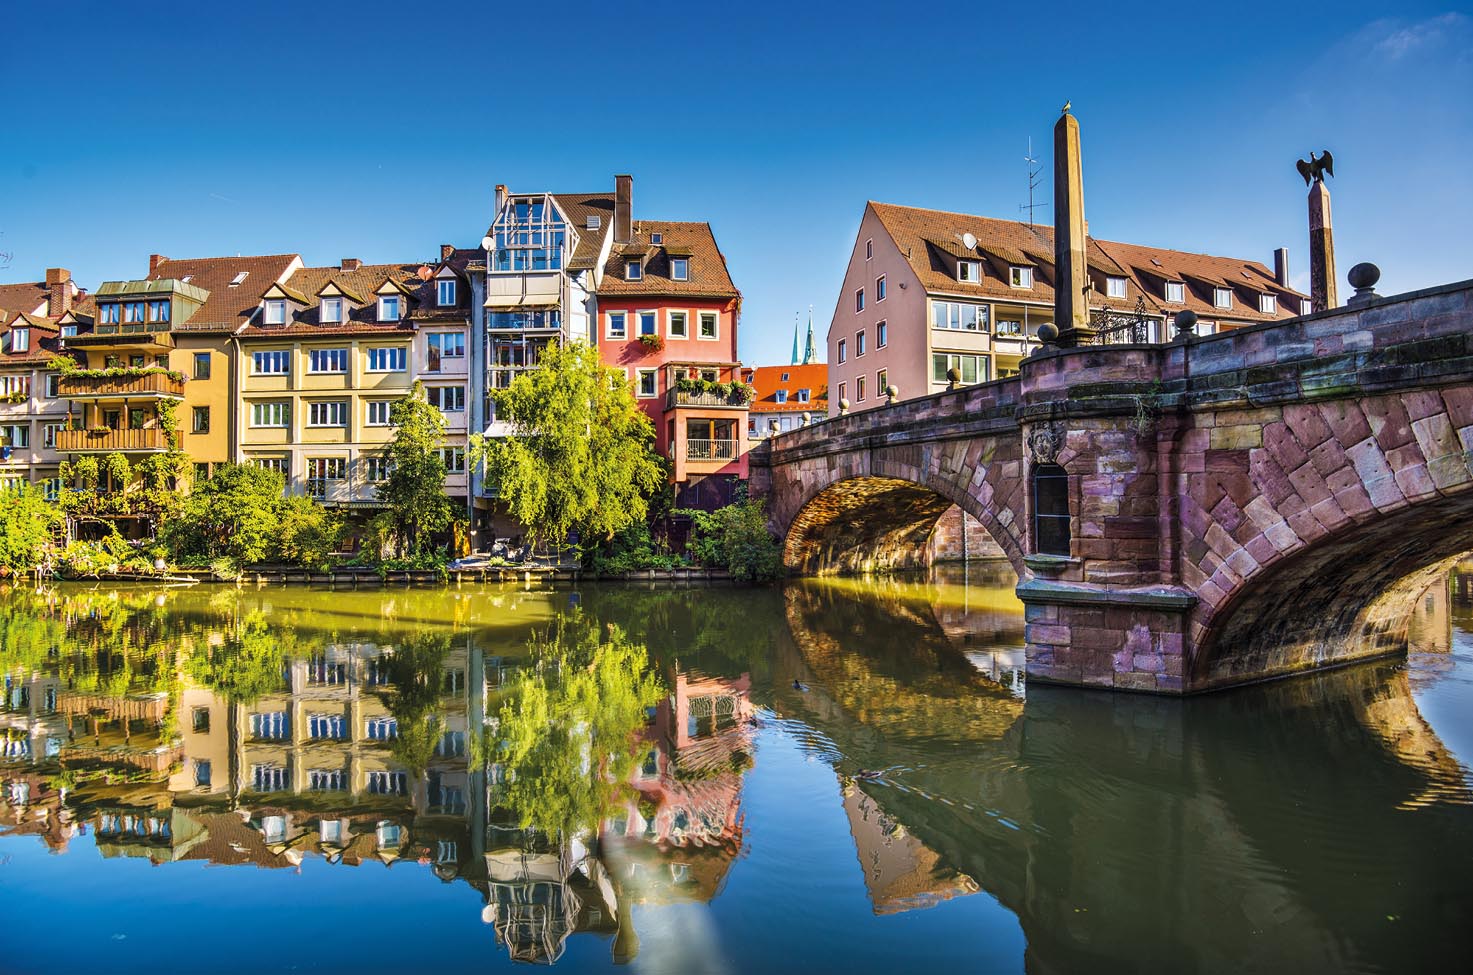 Old Town and Bridge in Nuremberg 